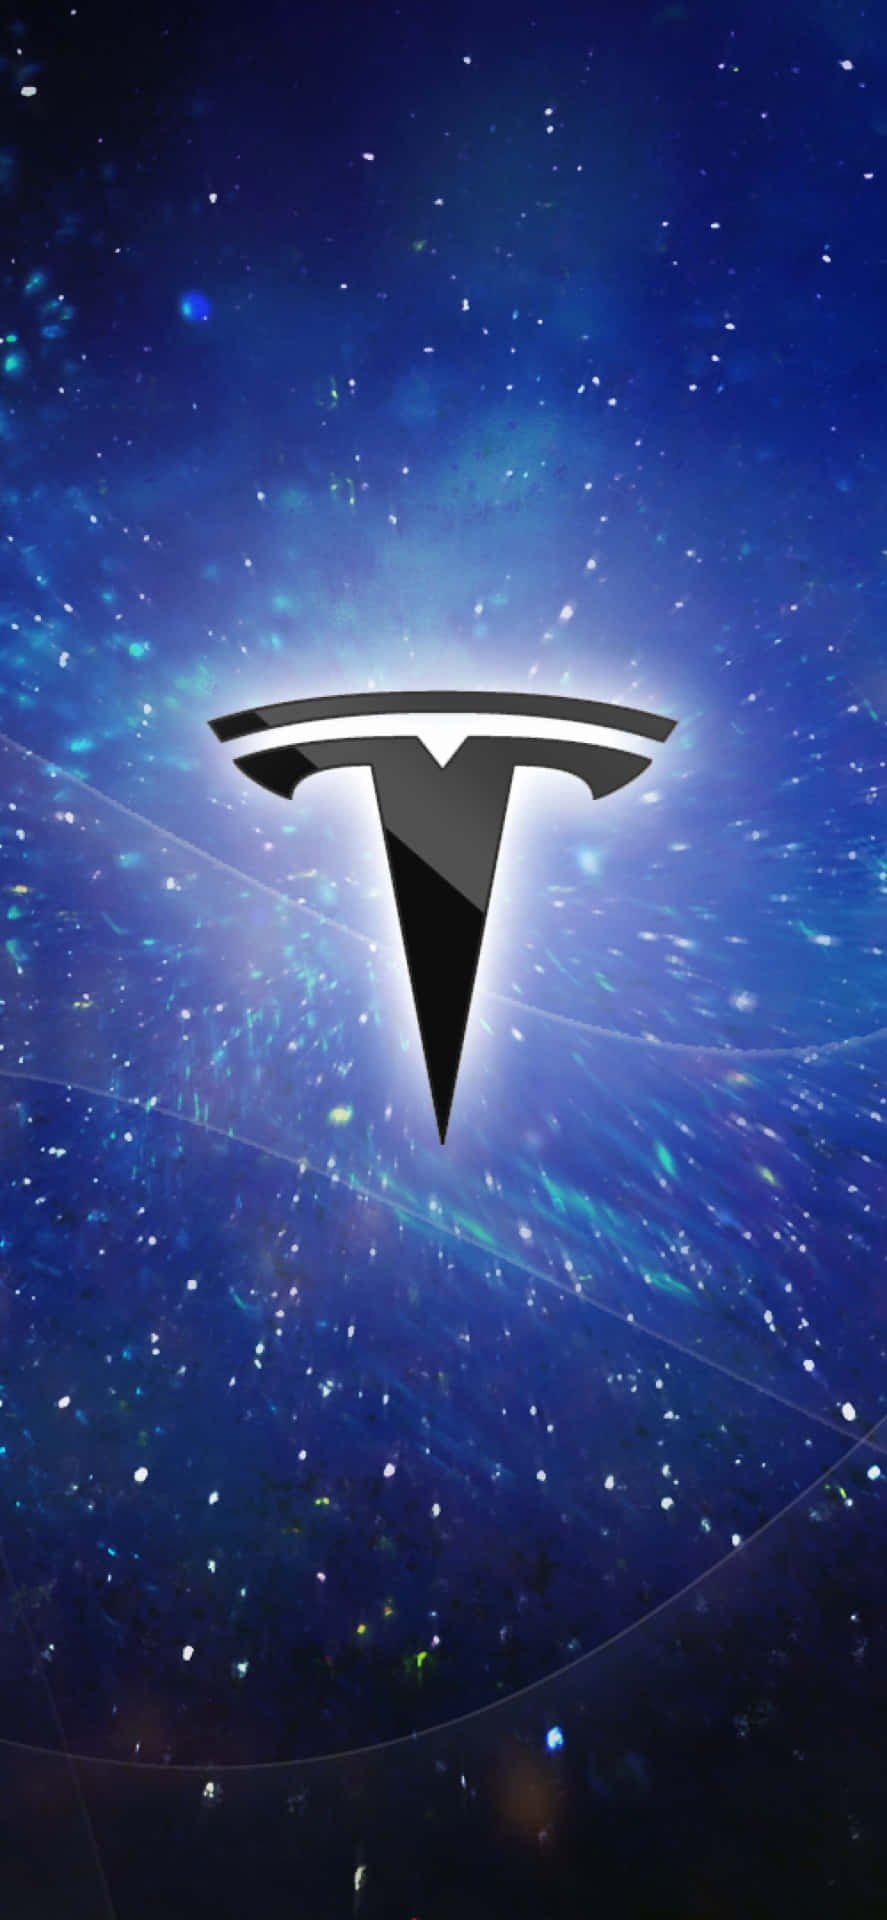 Tesla Logo 4k Wallpaper